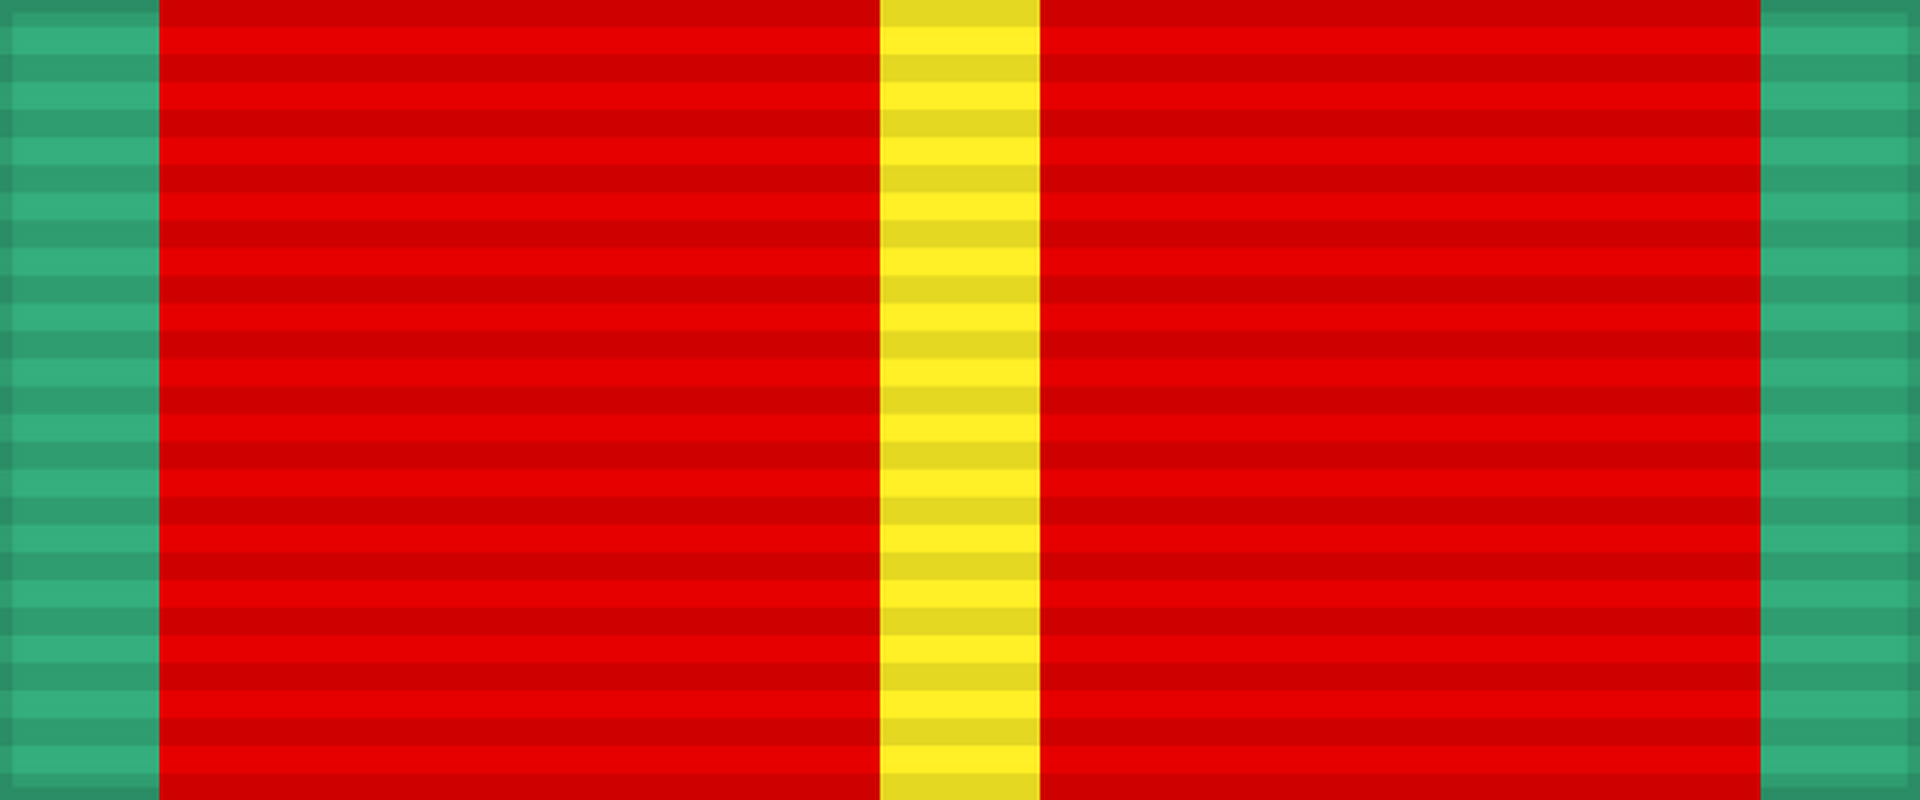 Лента медали «За безупречную службу» 1-й степени (20 лет). СССР.